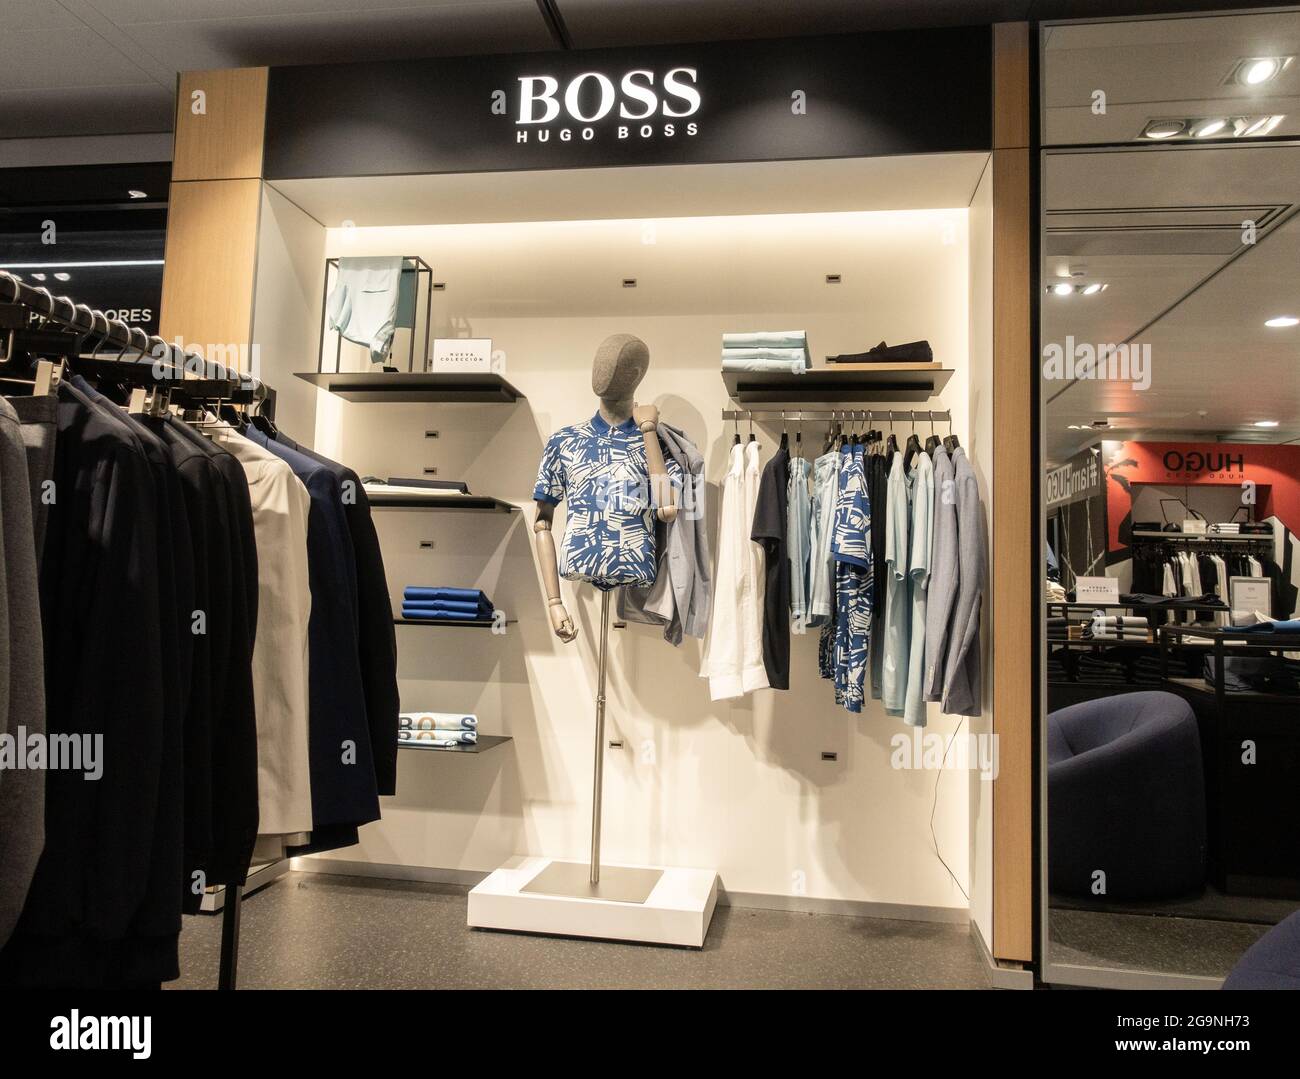 Exposition de magasin de vêtements Hugo Boss Photo Stock - Alamy